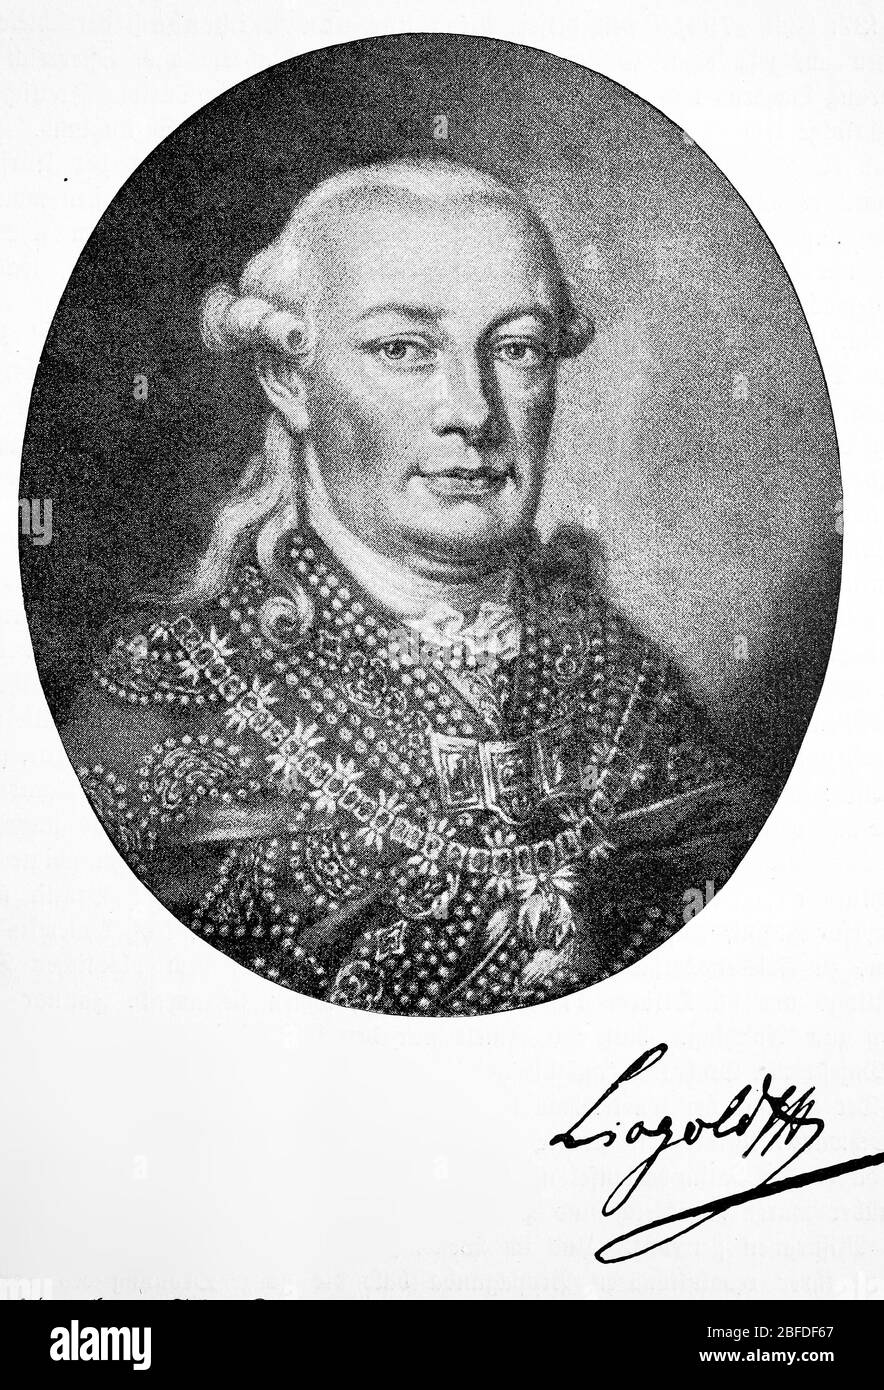 Leopold II., 5. Mai 1747 - 1. März 1792, war Erzherzog von Österreich aus dem Hause Habsburg-Lothringen, von 1765 bis 1790 (als Peter Leopold) Großherzog der Toskana und von 1790 bis 1792 Kaiser des Heiligen Römischen Reiches und König von Böhmen, Kroatien und Ungarn / Leopold II., 5. 1747. - 1. Mai. März 1792, war Erzherzog von Österreich aus dem Haus Habsburg-Lothringen, von 1765 bis 1790 (als Peter Leopold) Großherzog der Toskana sowie von 1790 bis 1792 Kaiser des Heiligen Römischen Reiches und König von Böhmen, Kroatien und Ungarn, historisch, historisch, digital verbesserte Reproduktion eines Original-Fr. Stockfoto